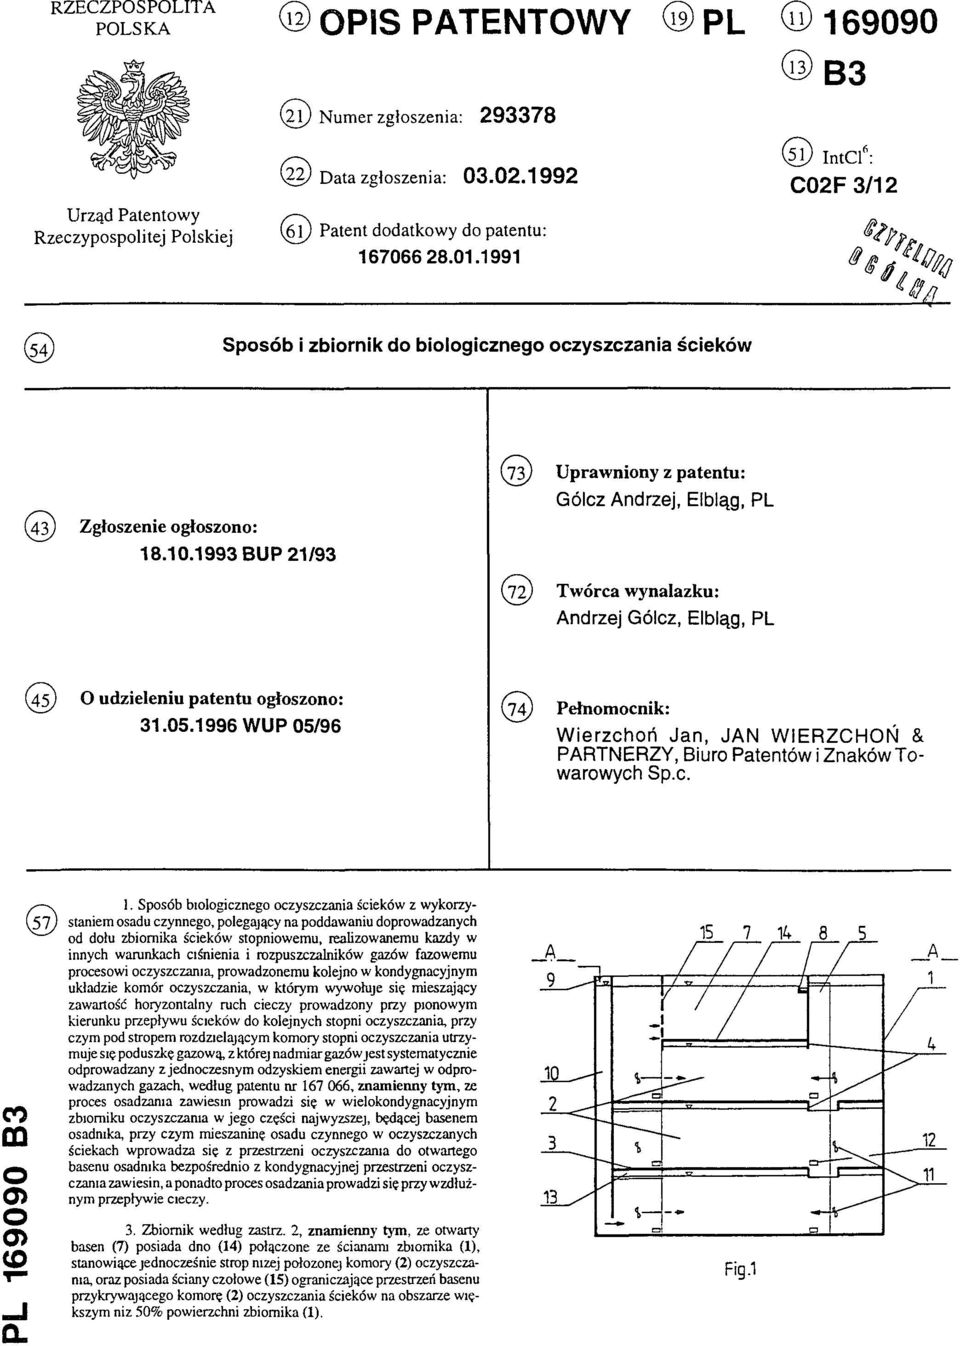 1993 BUP 21/93 (73) Uprawniony z patentu: Gólcz Andrzej, Elbląg, PL (72) Twórca wynalazku: Andrzej Gólcz, Elbląg, PL (45) O udzieleniu patentu ogłoszono: 31.05.